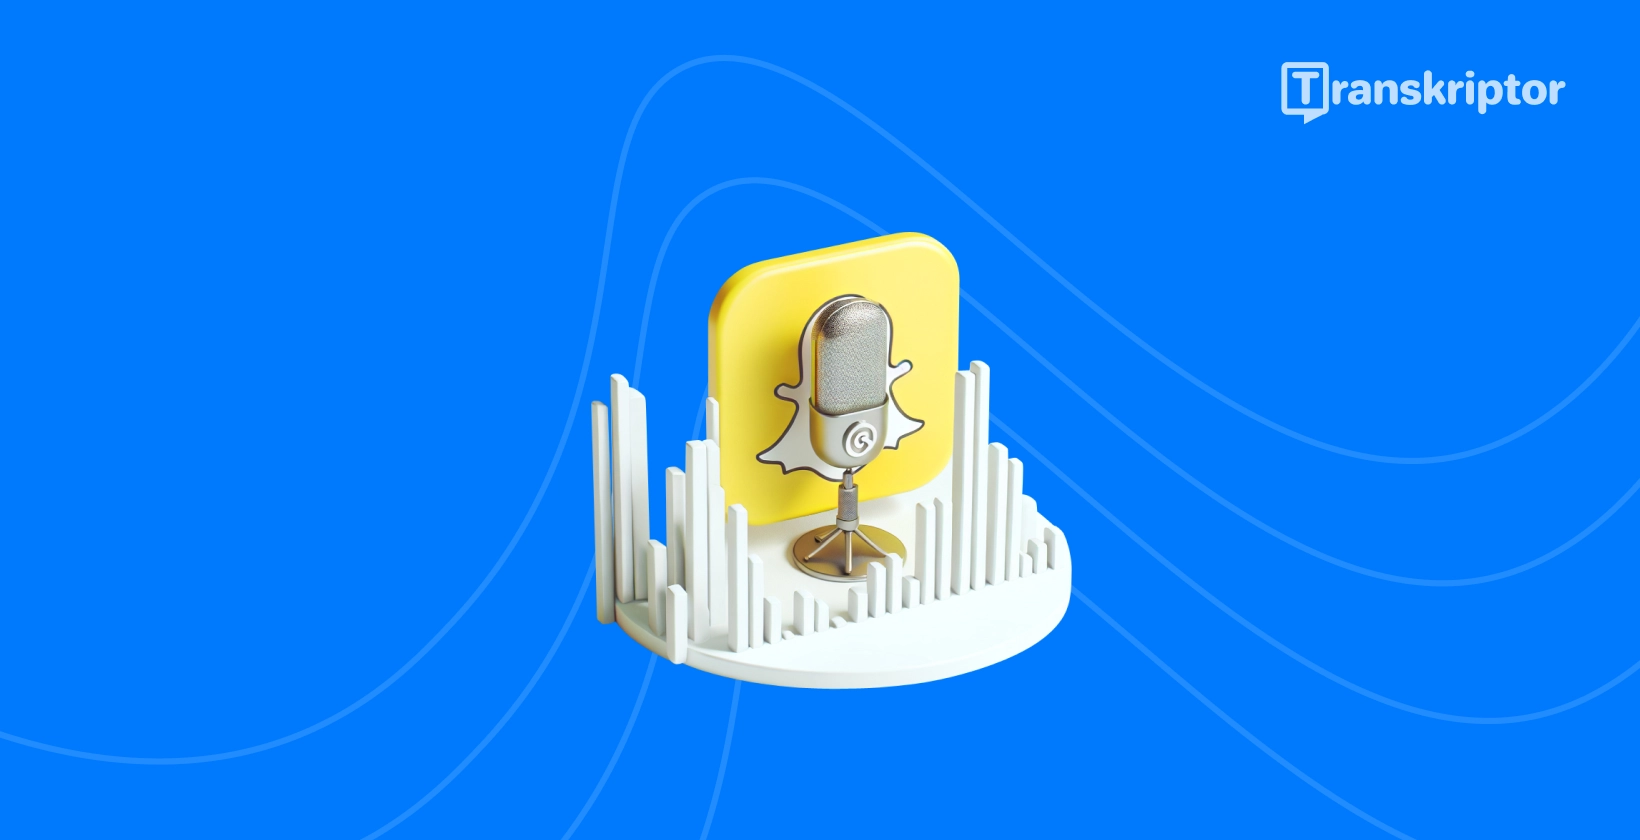 Snapchat szellem és mikrofon ikon, amely a Transkriptor hangátírási útmutatóját szimbolizálja.